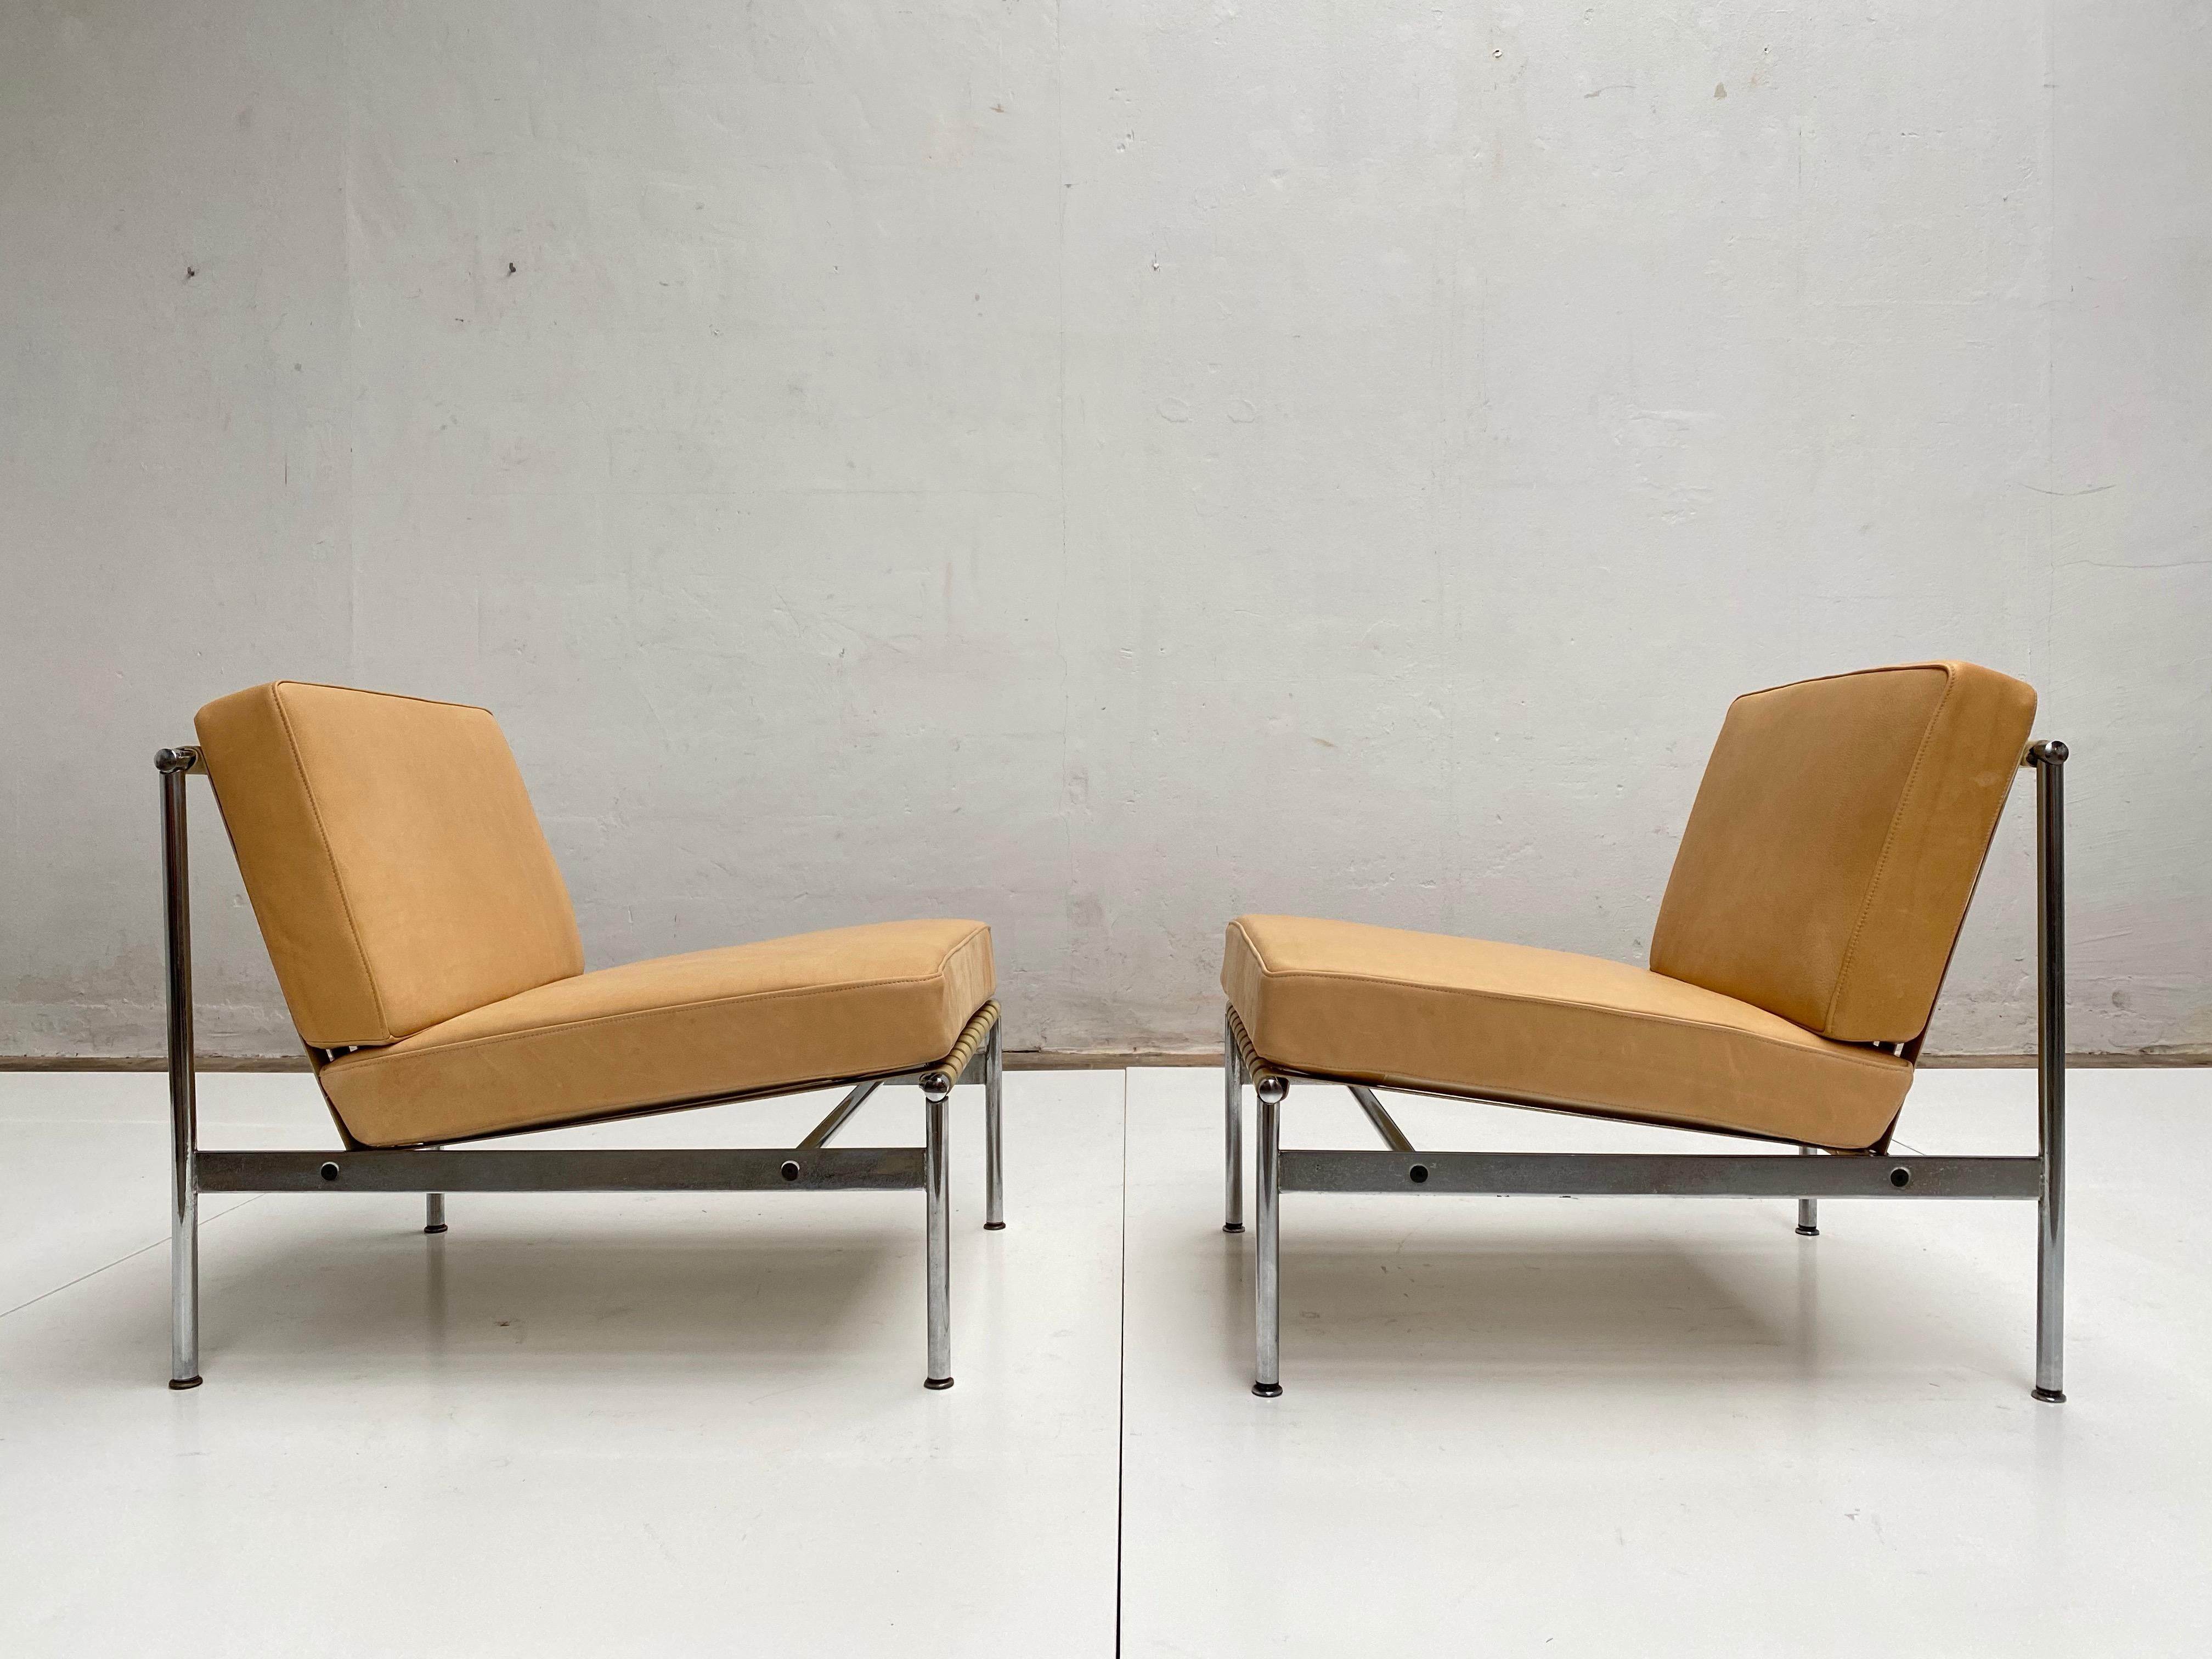 Belle paire de chaises longues en cuir et chrome dans le style de Florence Knoll, vers 1958-1962.

Nous avons acheté ces chaises élégantes en France et elles ont une belle qualité de construction. 

Les coussins d'assise et de dossier en cuir